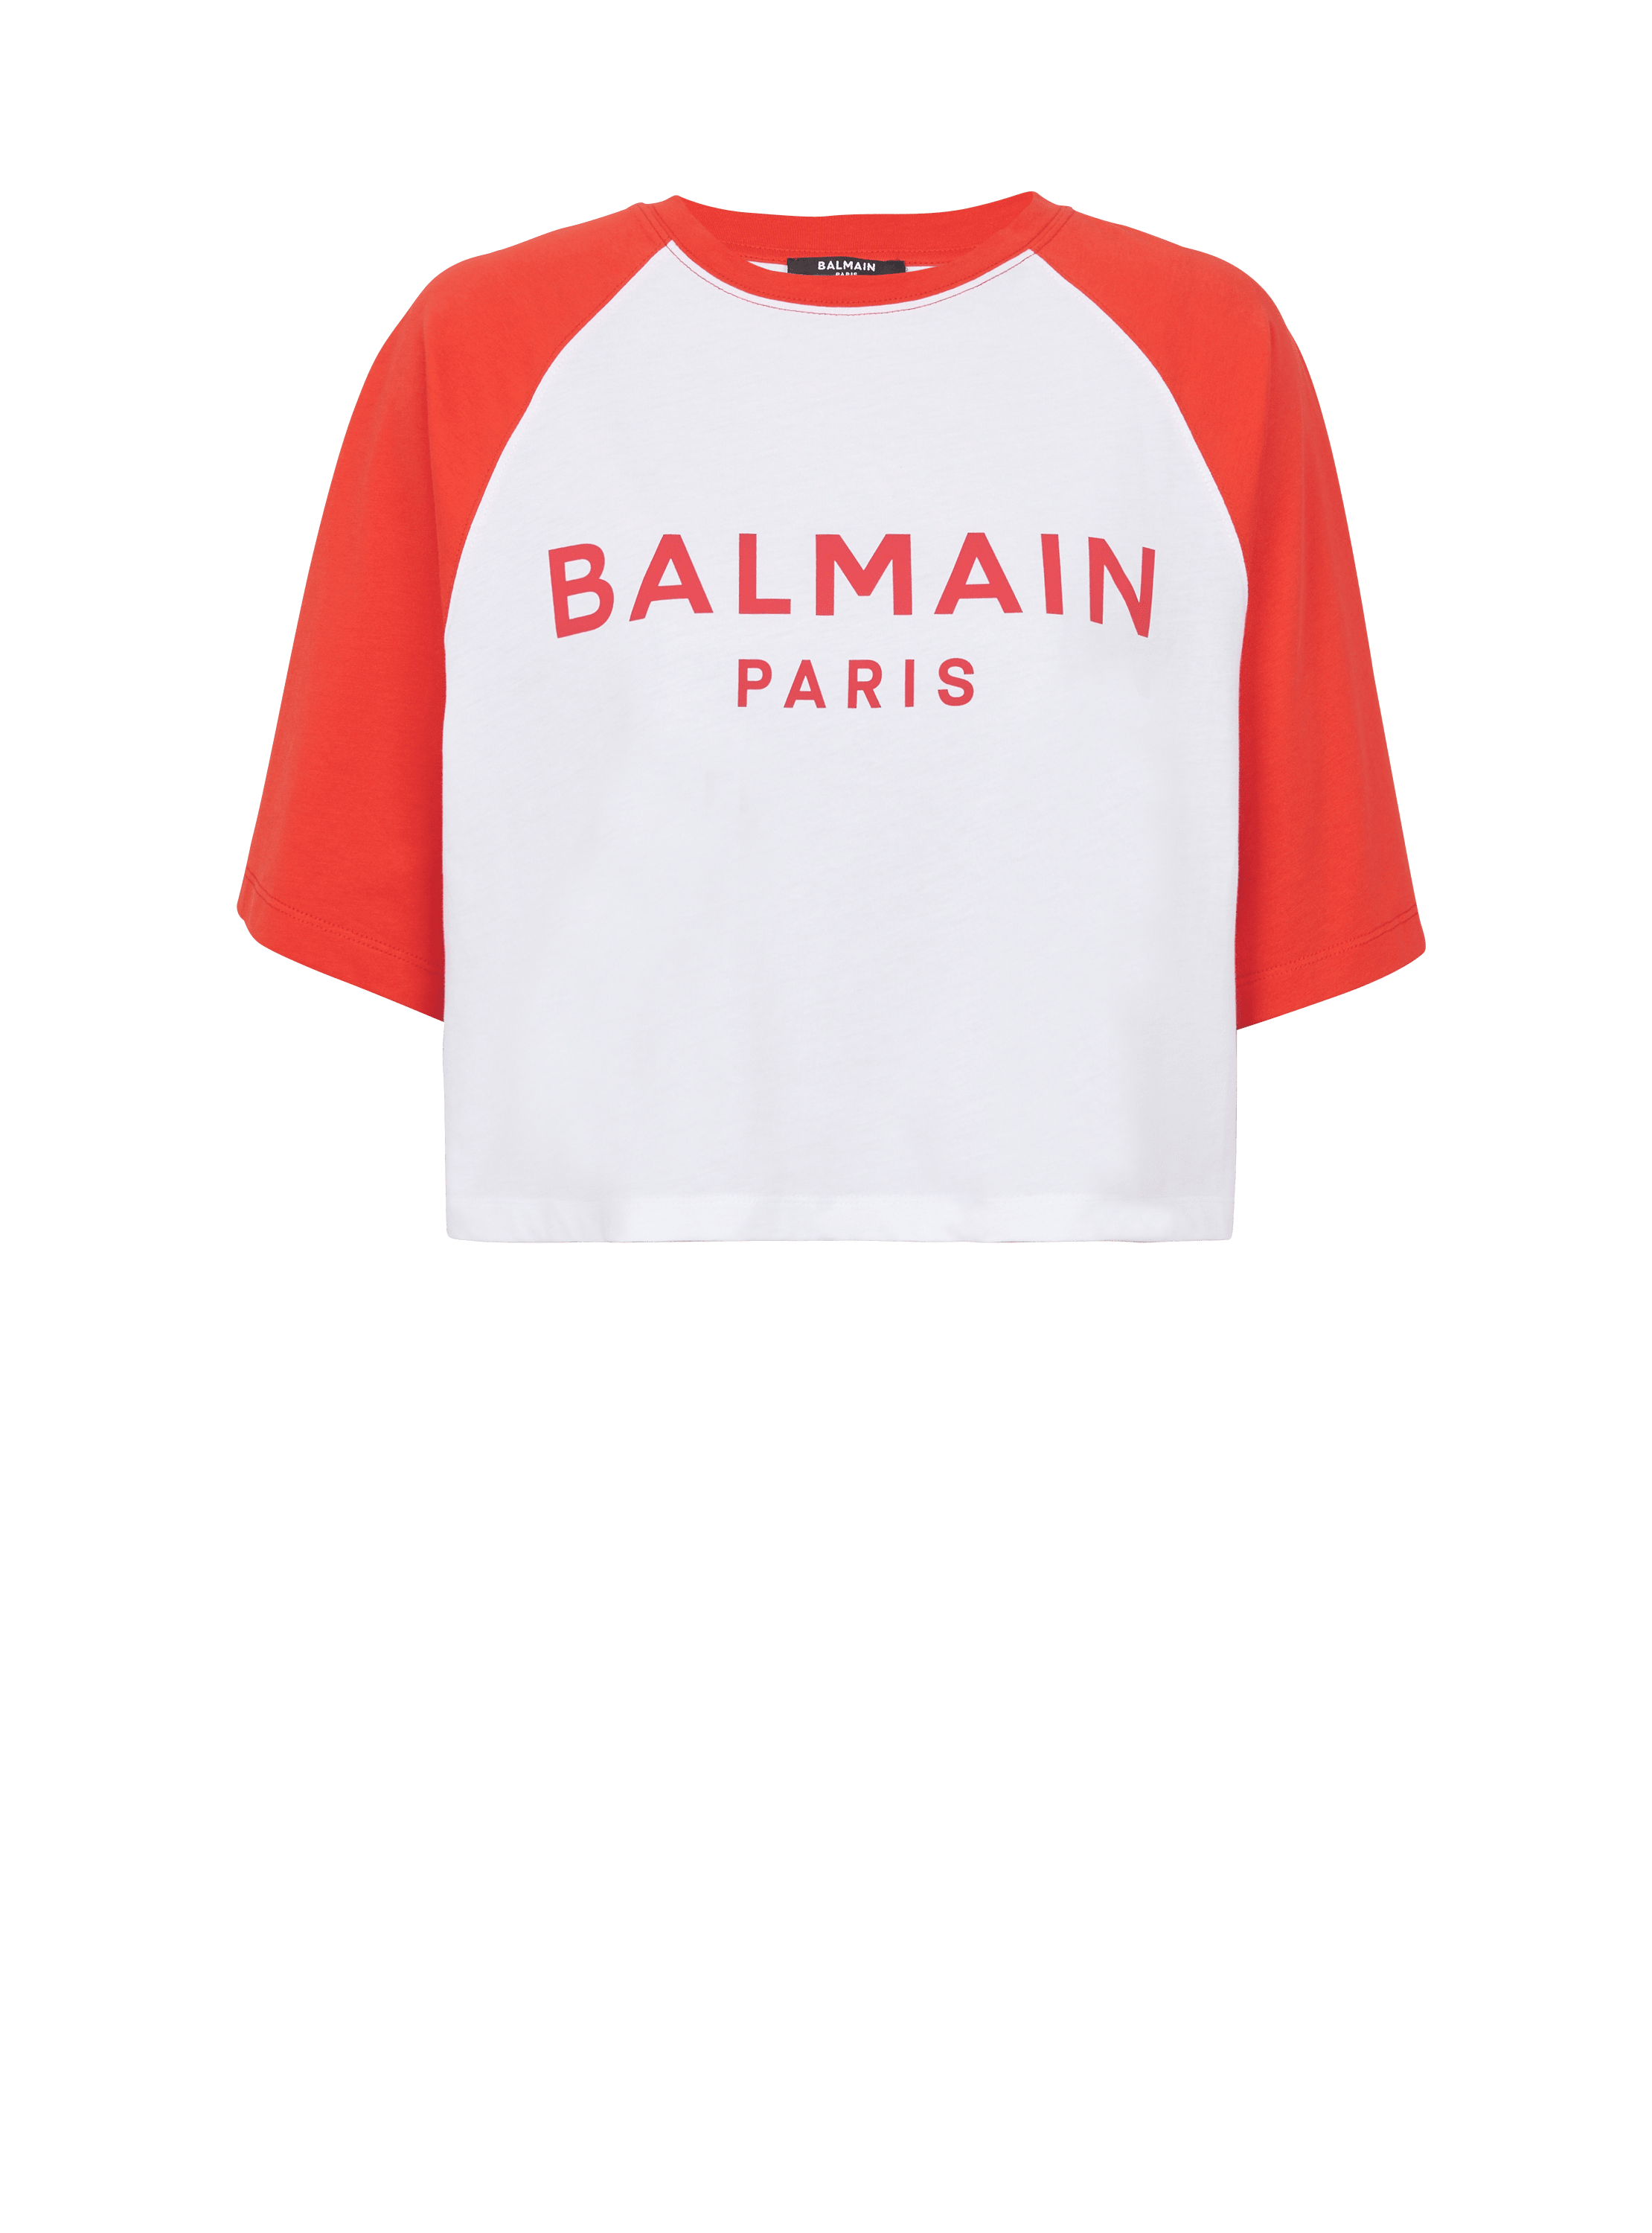 Balmain Paris T-Shirt, rot, hi-res